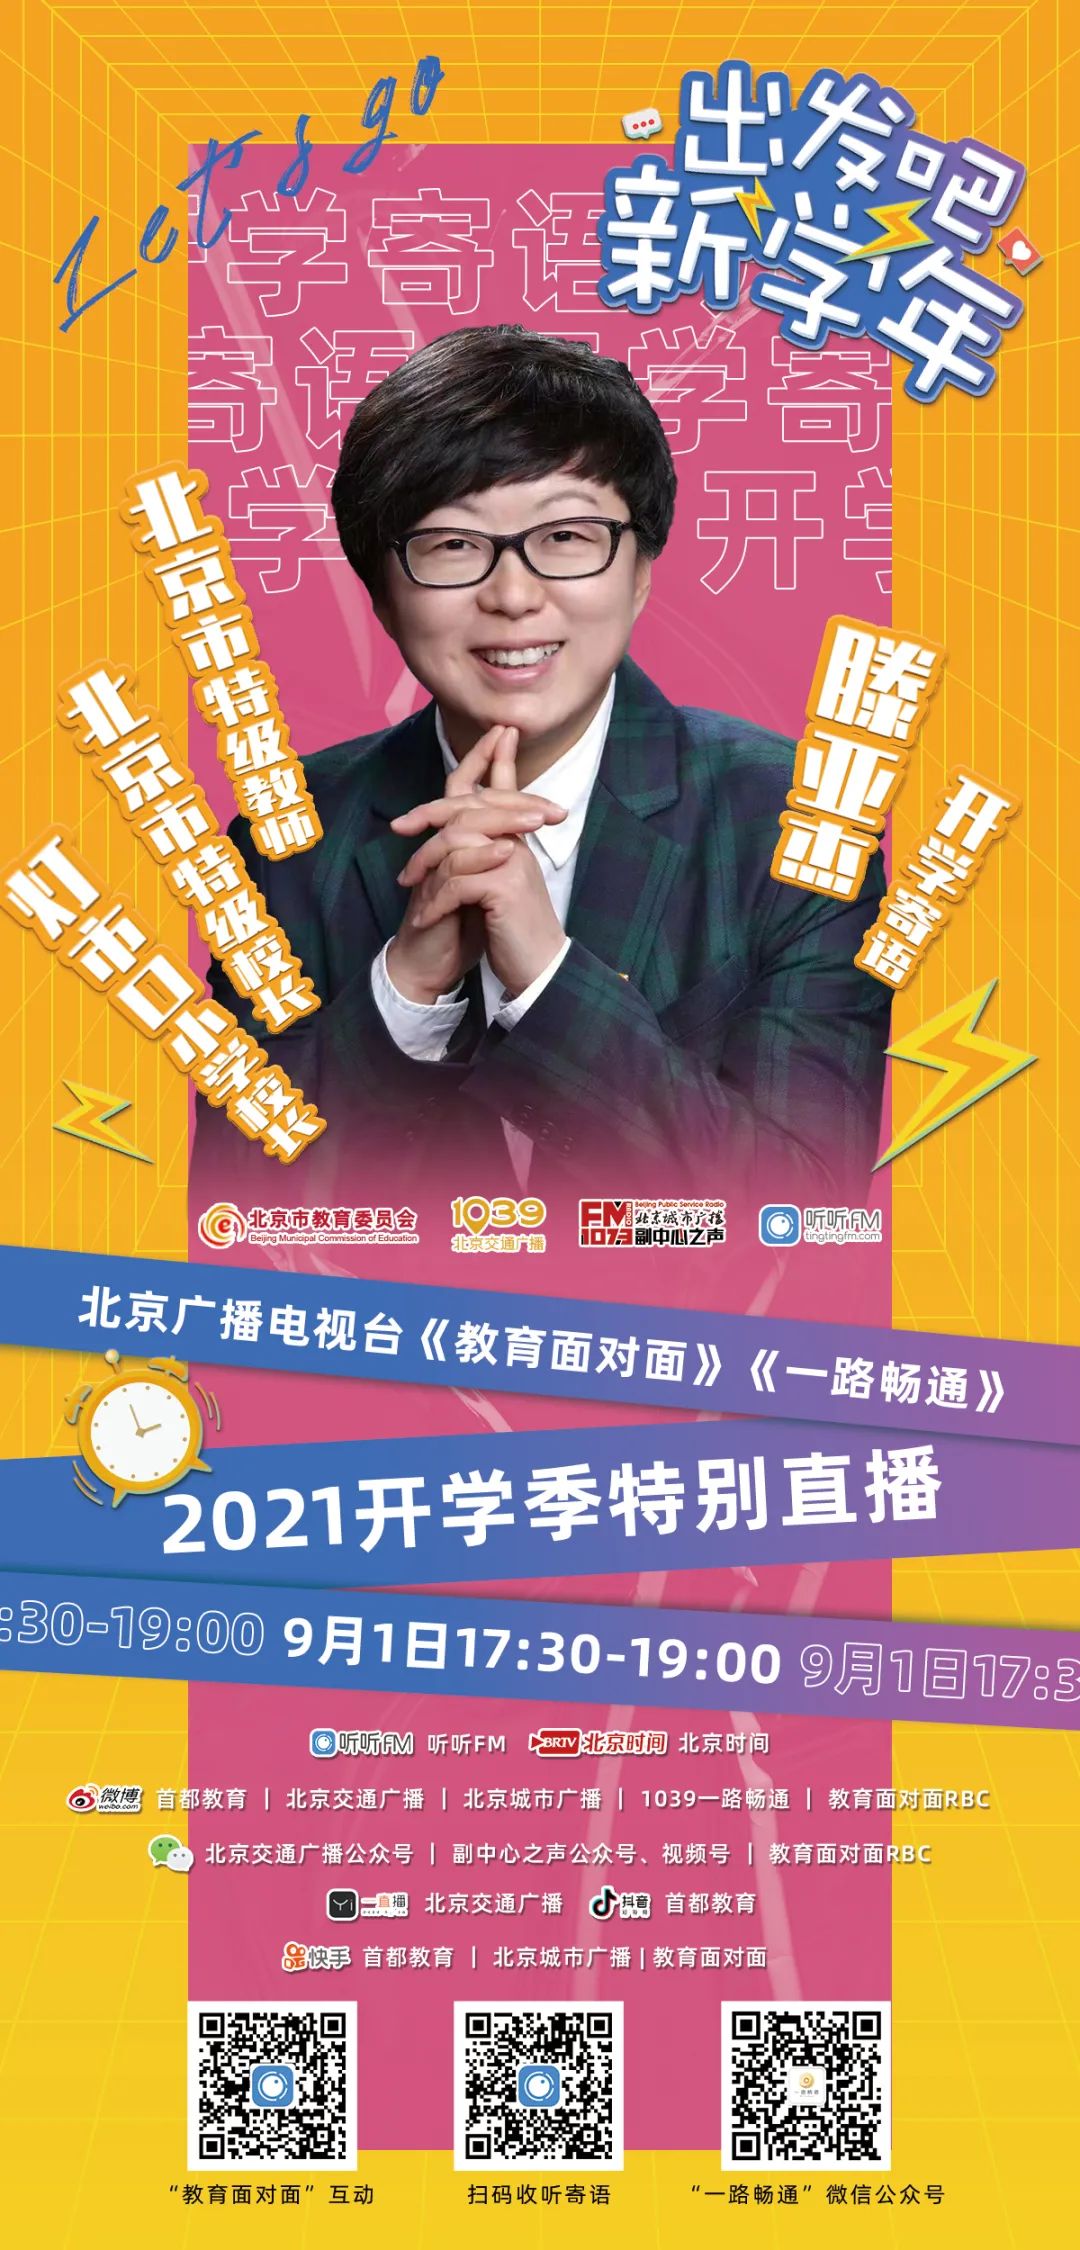 2021出发吧，新学年！——北京广播电视台《教育面对面》X《一路畅通》2021开学季特别直播